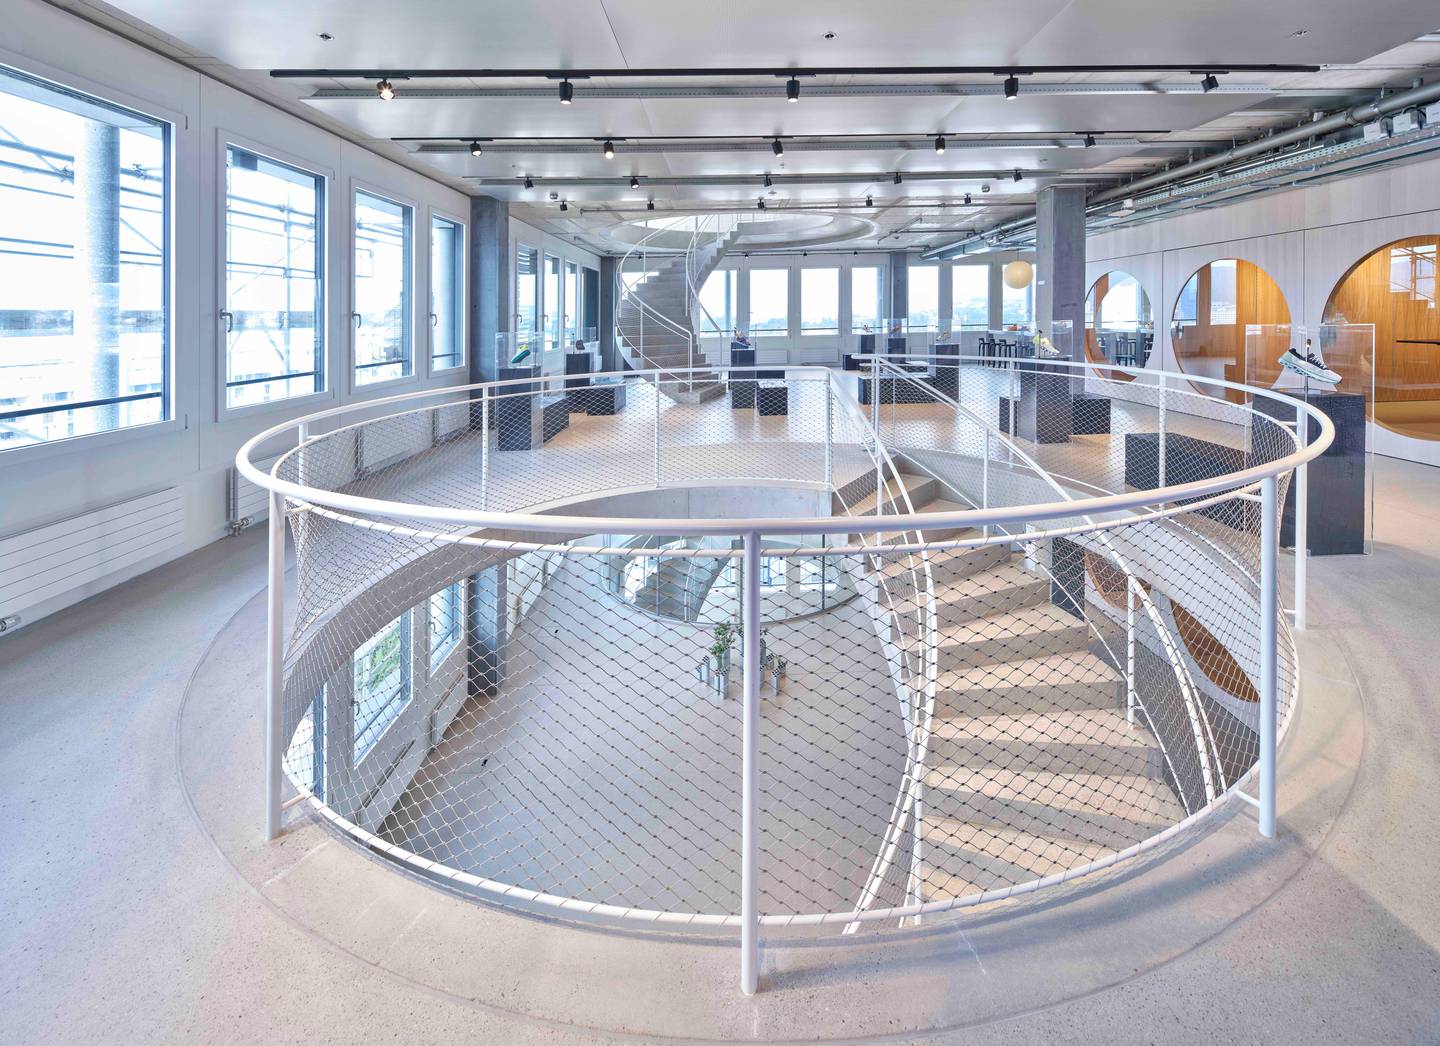 总部位于瑞士苏黎世的跑鞋品牌On今年开放了17层的新办公空间，配备了一条名为“the Trail”的中央楼梯。